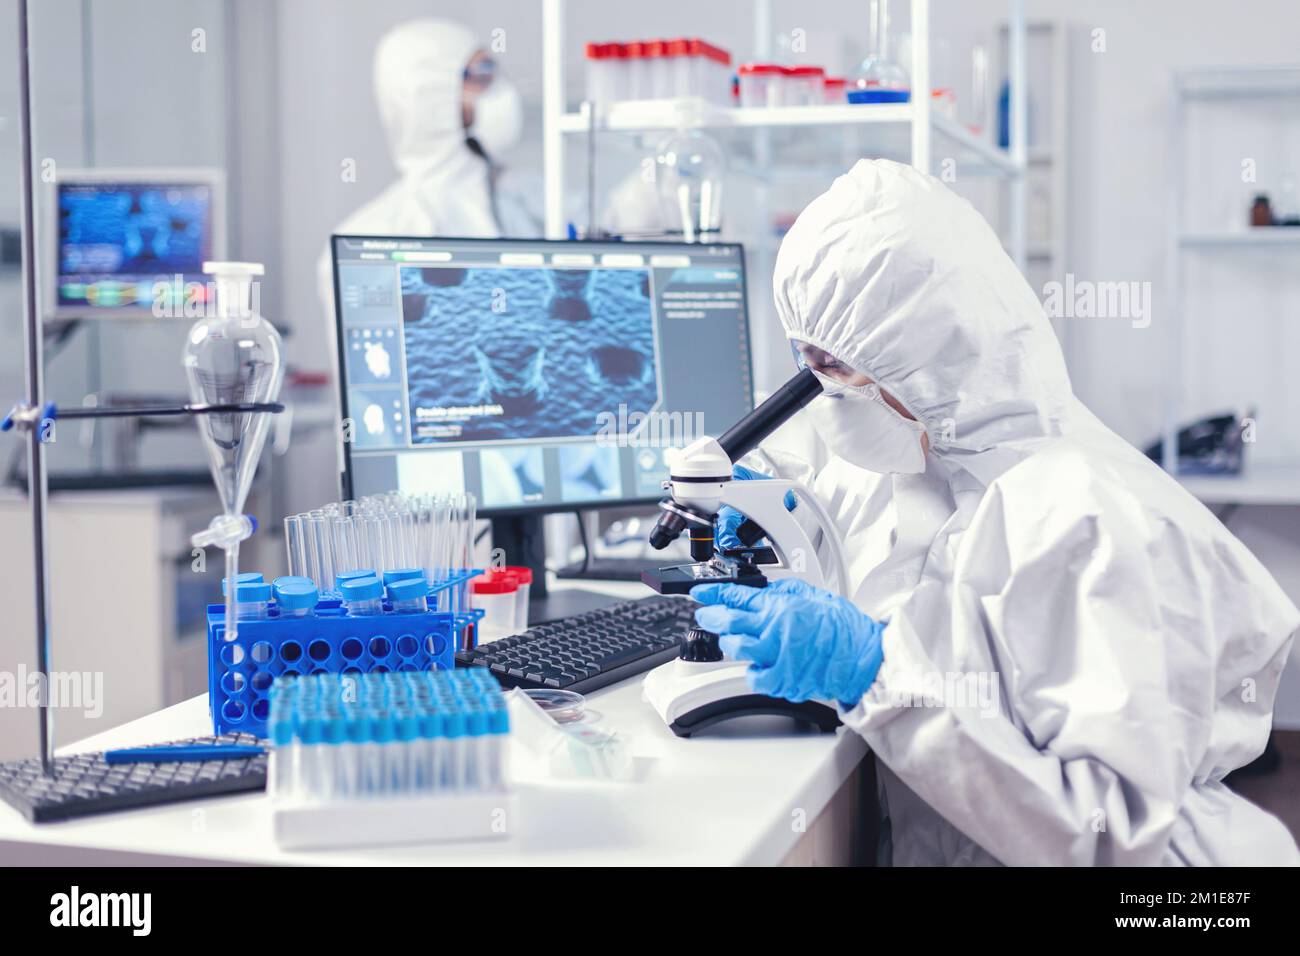 Team di personale medico indossando tuta dpi facendo l'analisi del coronavirus in laboratorio moderno. Ricercatore chimico durante la pandemia globale con campione di controllo COVID-19 in laboratorio di biochimica Foto Stock